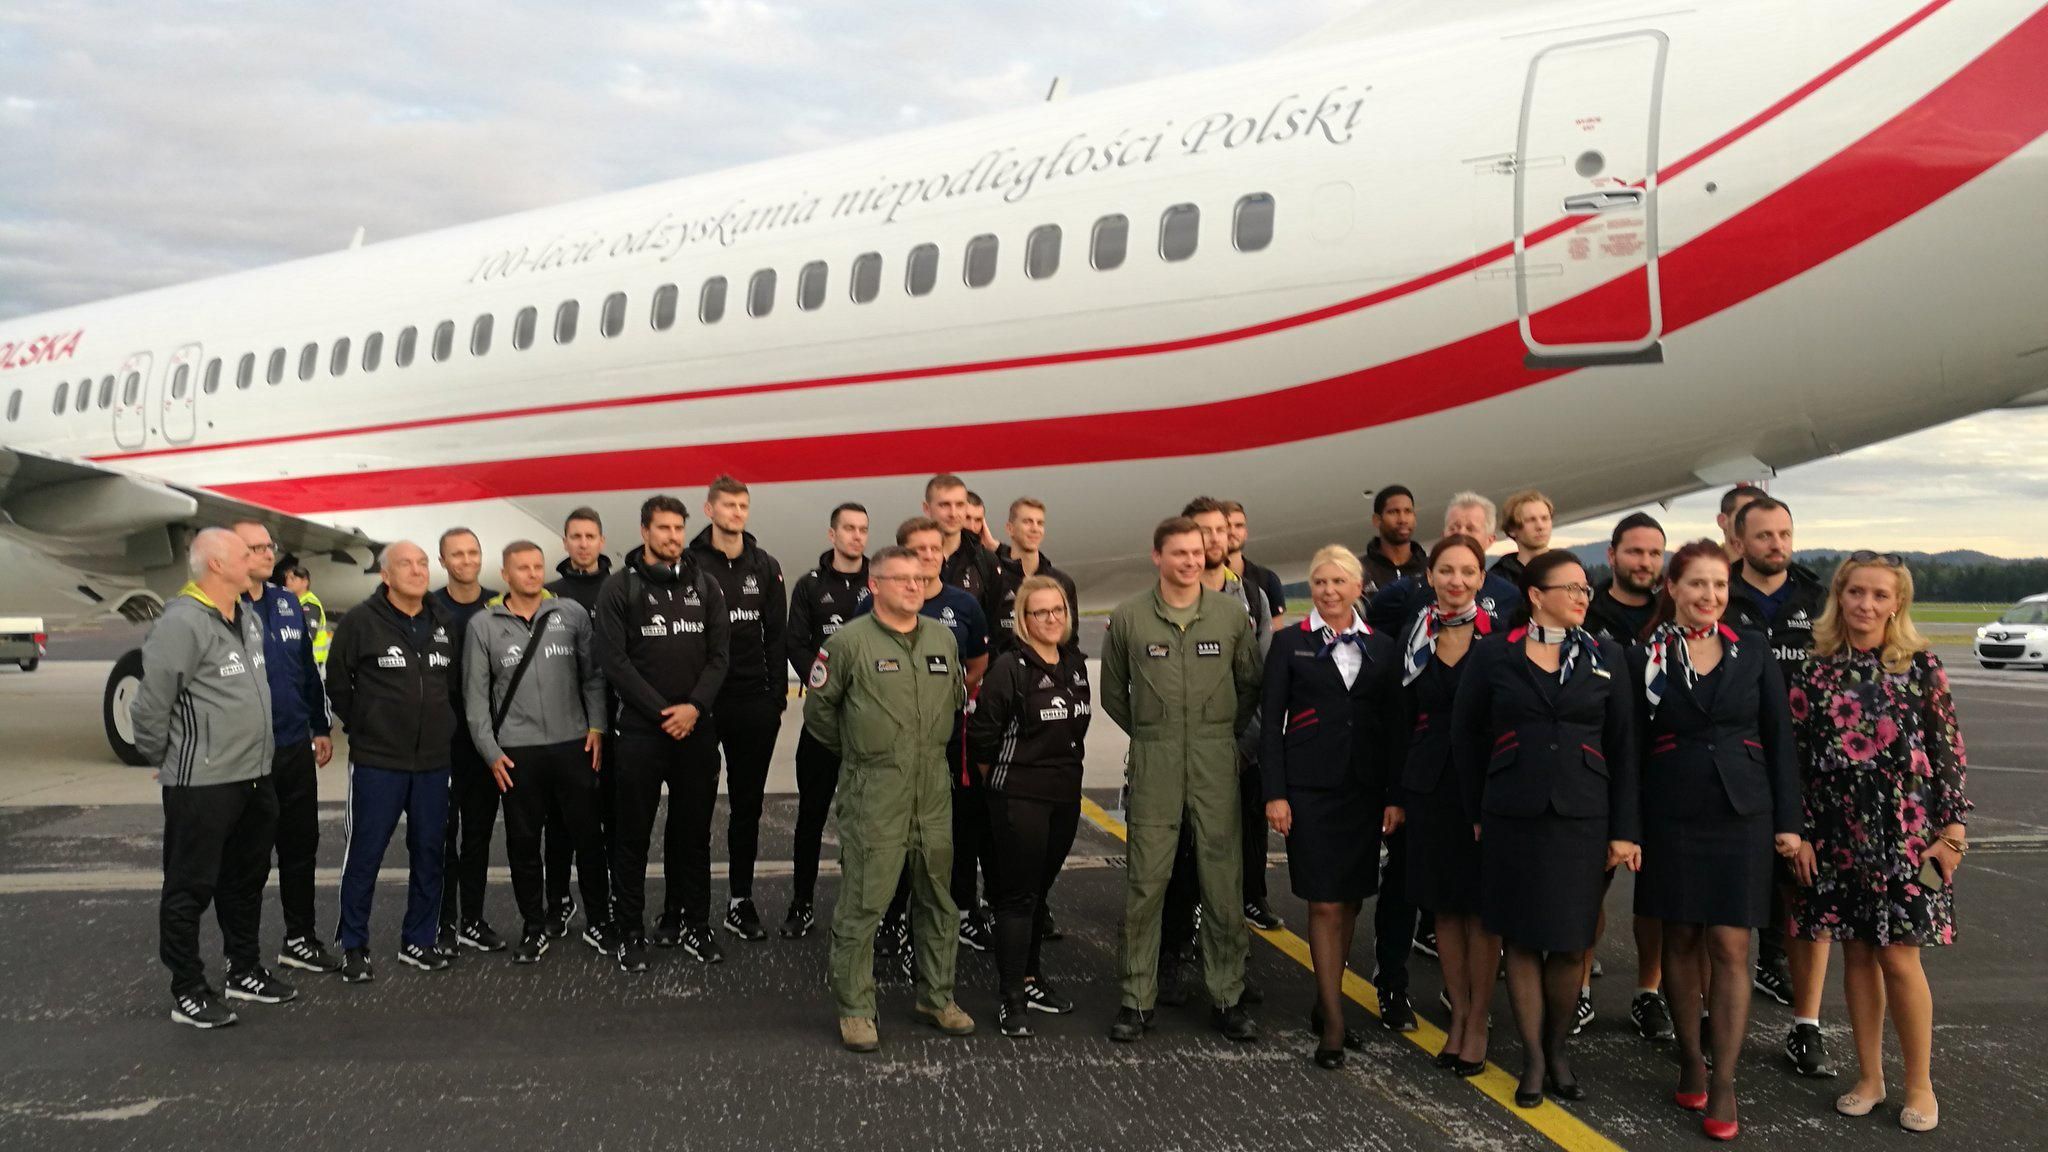 Прем'єр-міністр Польщі виділив урядовий літак збірній з волейболу, щоб вона дісталася на матч ЧЄ